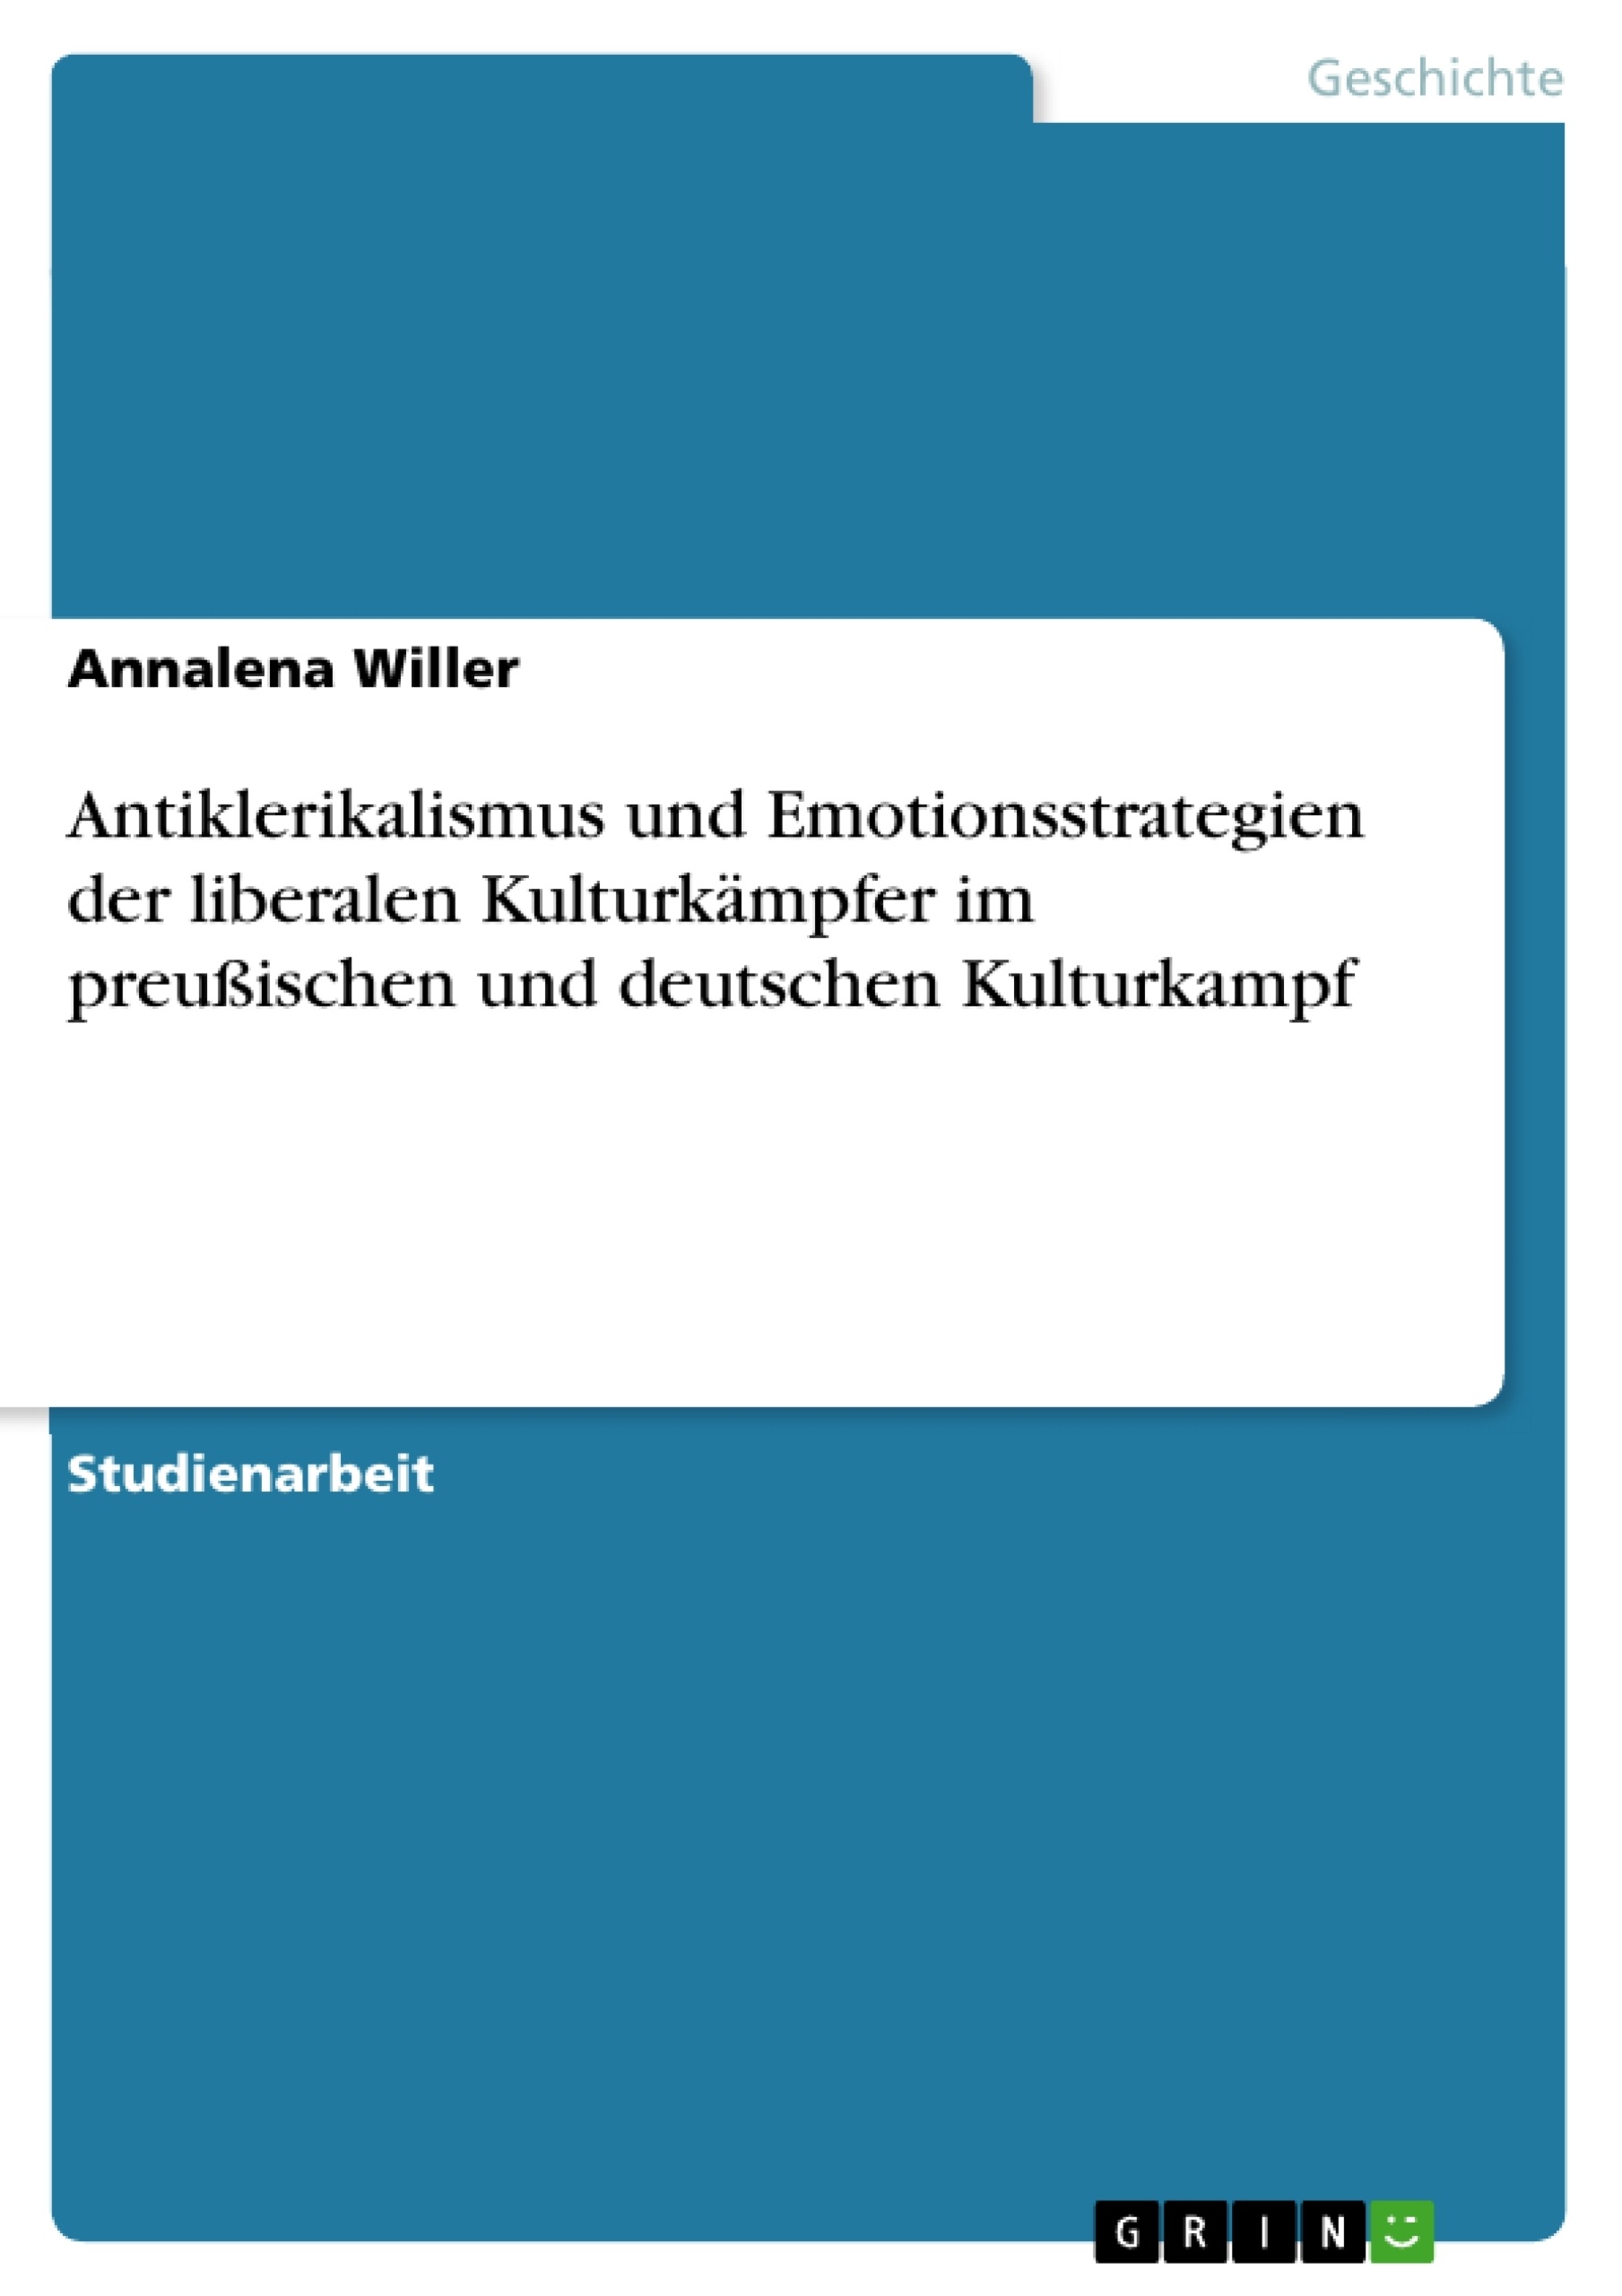 Title: Antiklerikalismus und Emotionsstrategien der liberalen Kulturkämpfer im preußischen und deutschen Kulturkampf